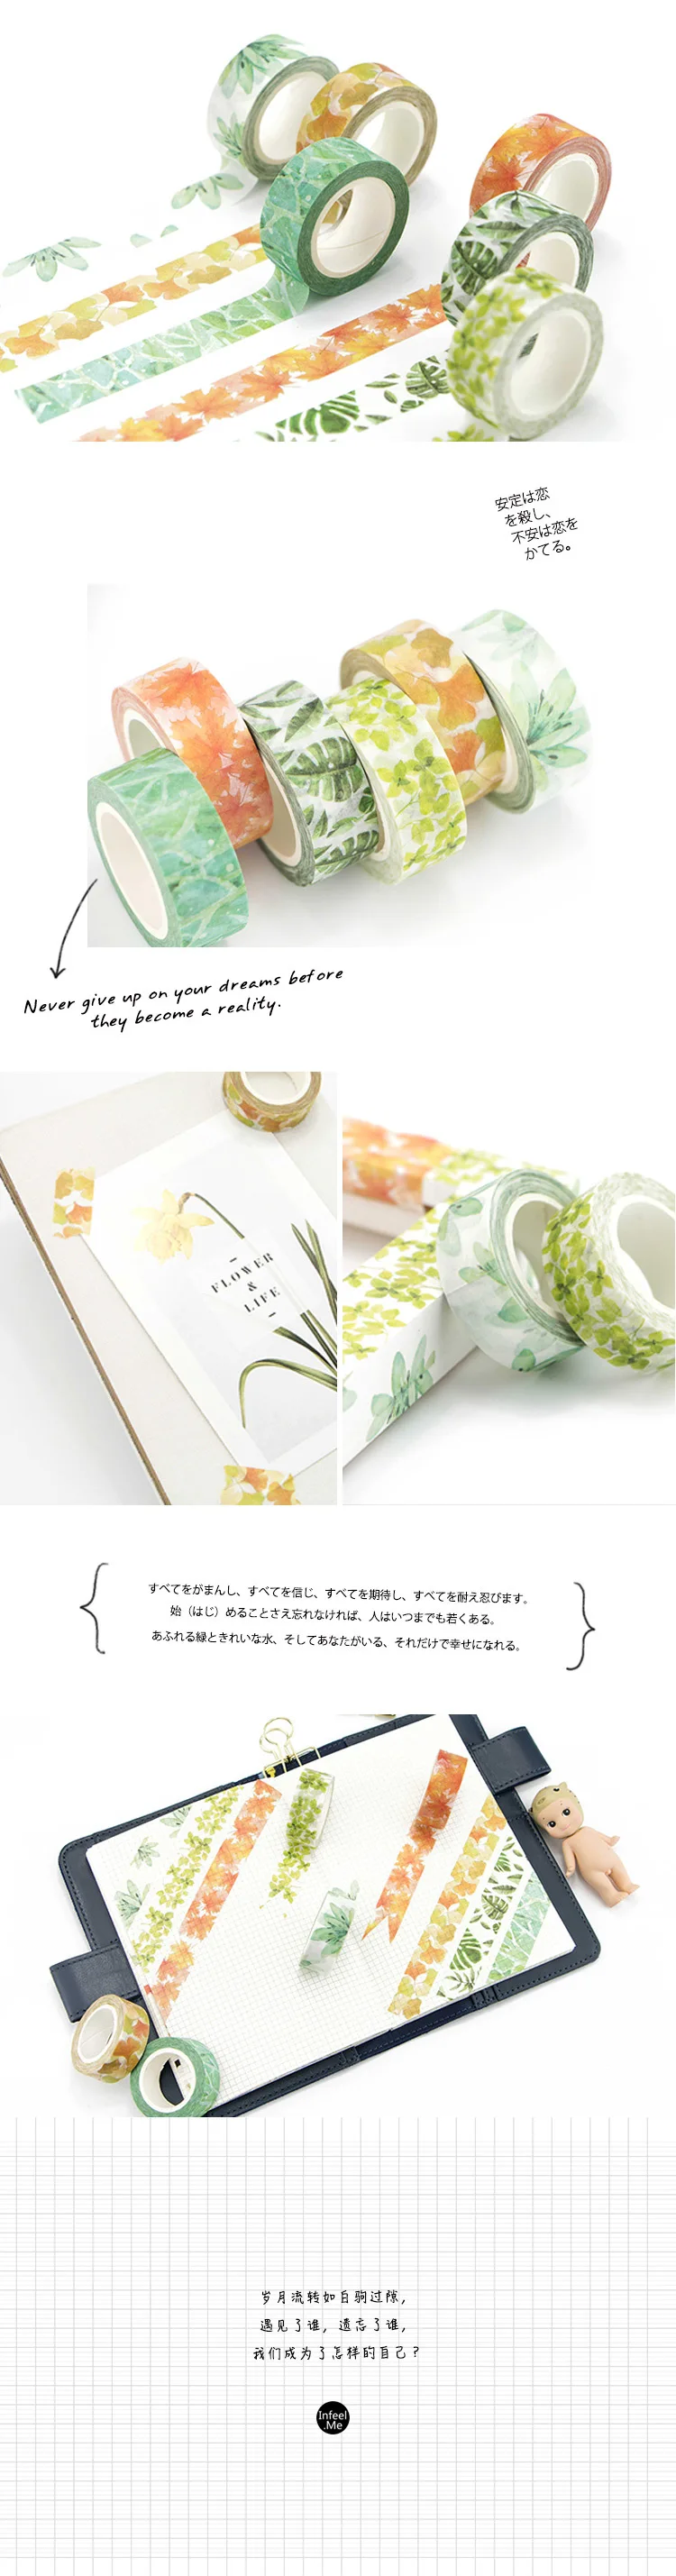 Милые кавайные растения цветы японская маскирующая васи лента декоративная клейкая лента Decora Diy Скрапбукинг наклейка этикетка канцелярские товары